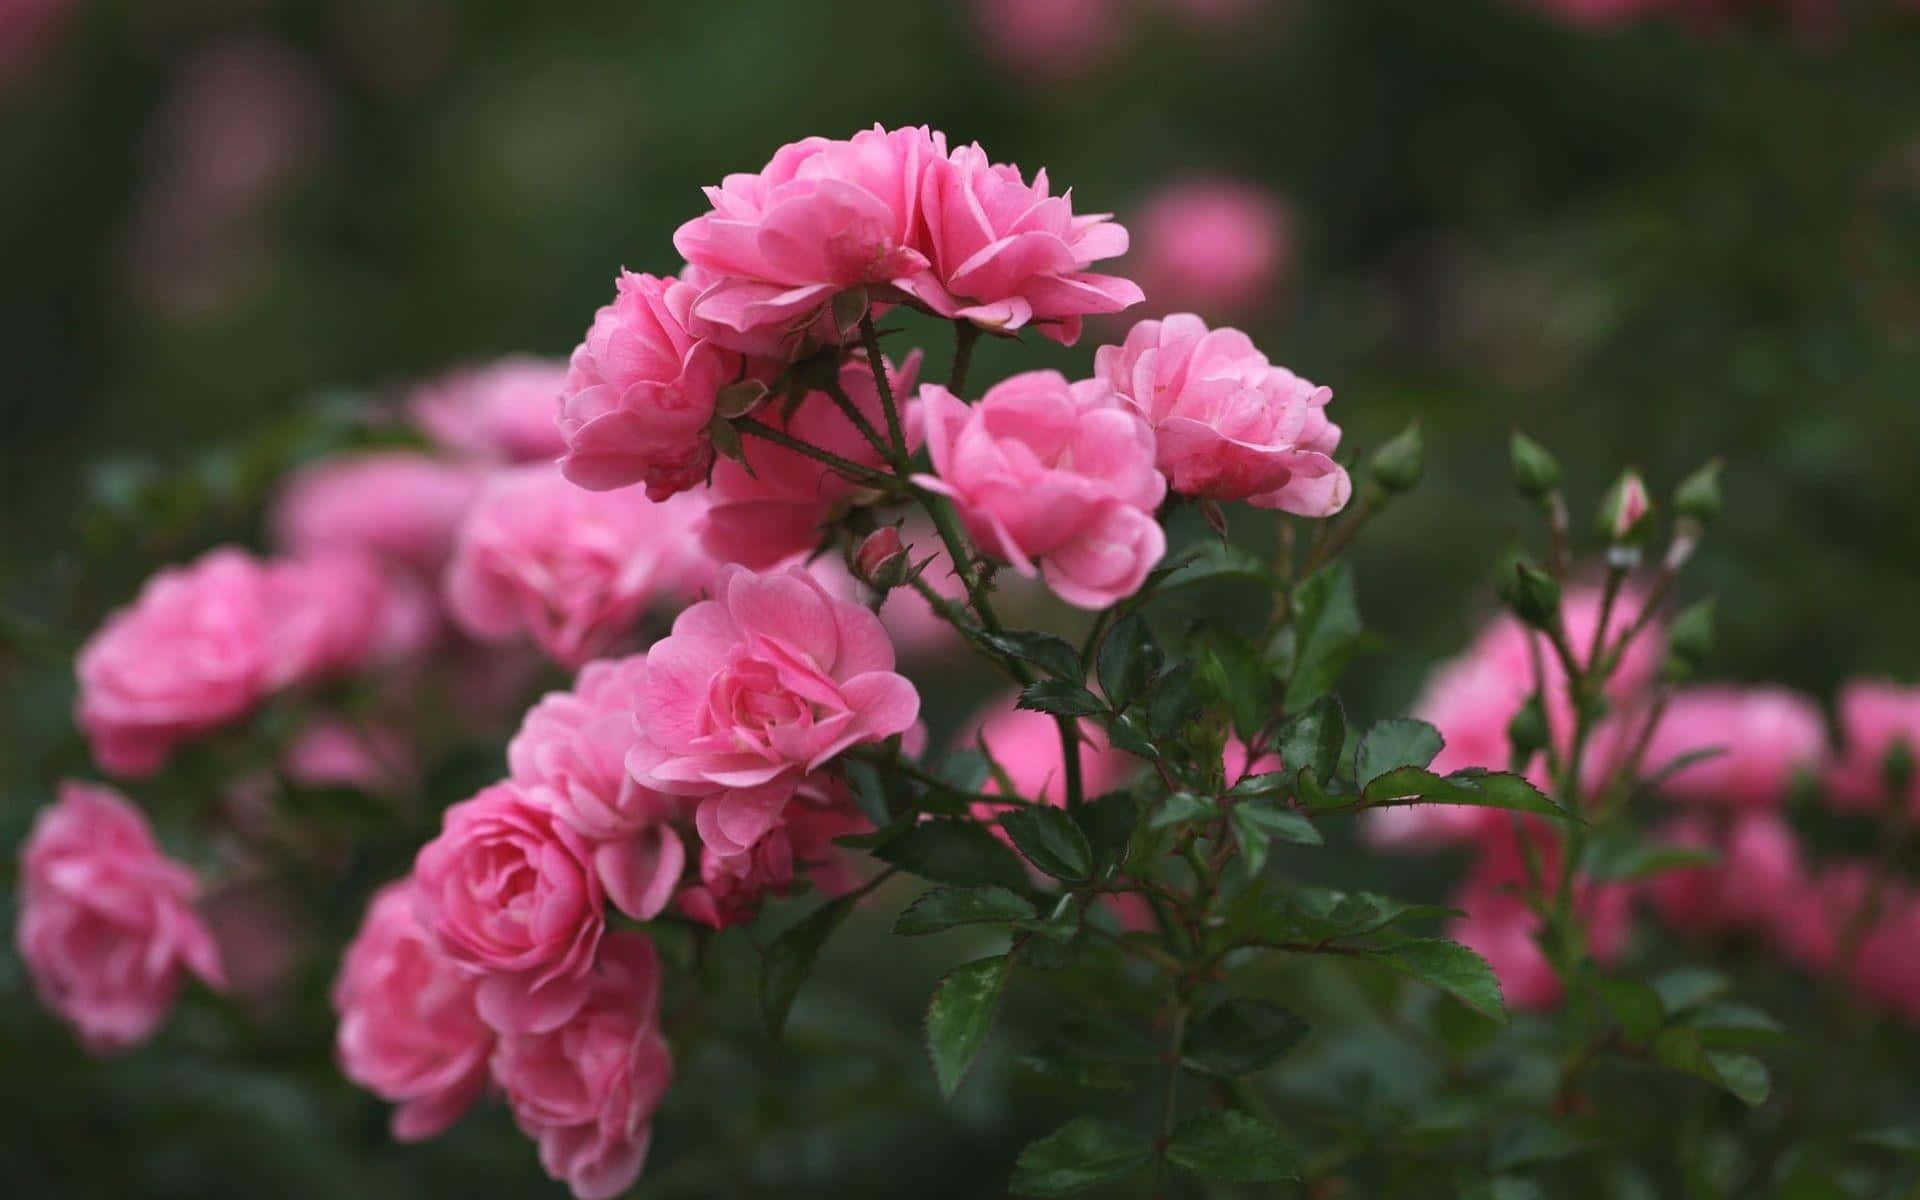 Einefesselnde Rosa Rose Blüht In Erhabener Schönheit.